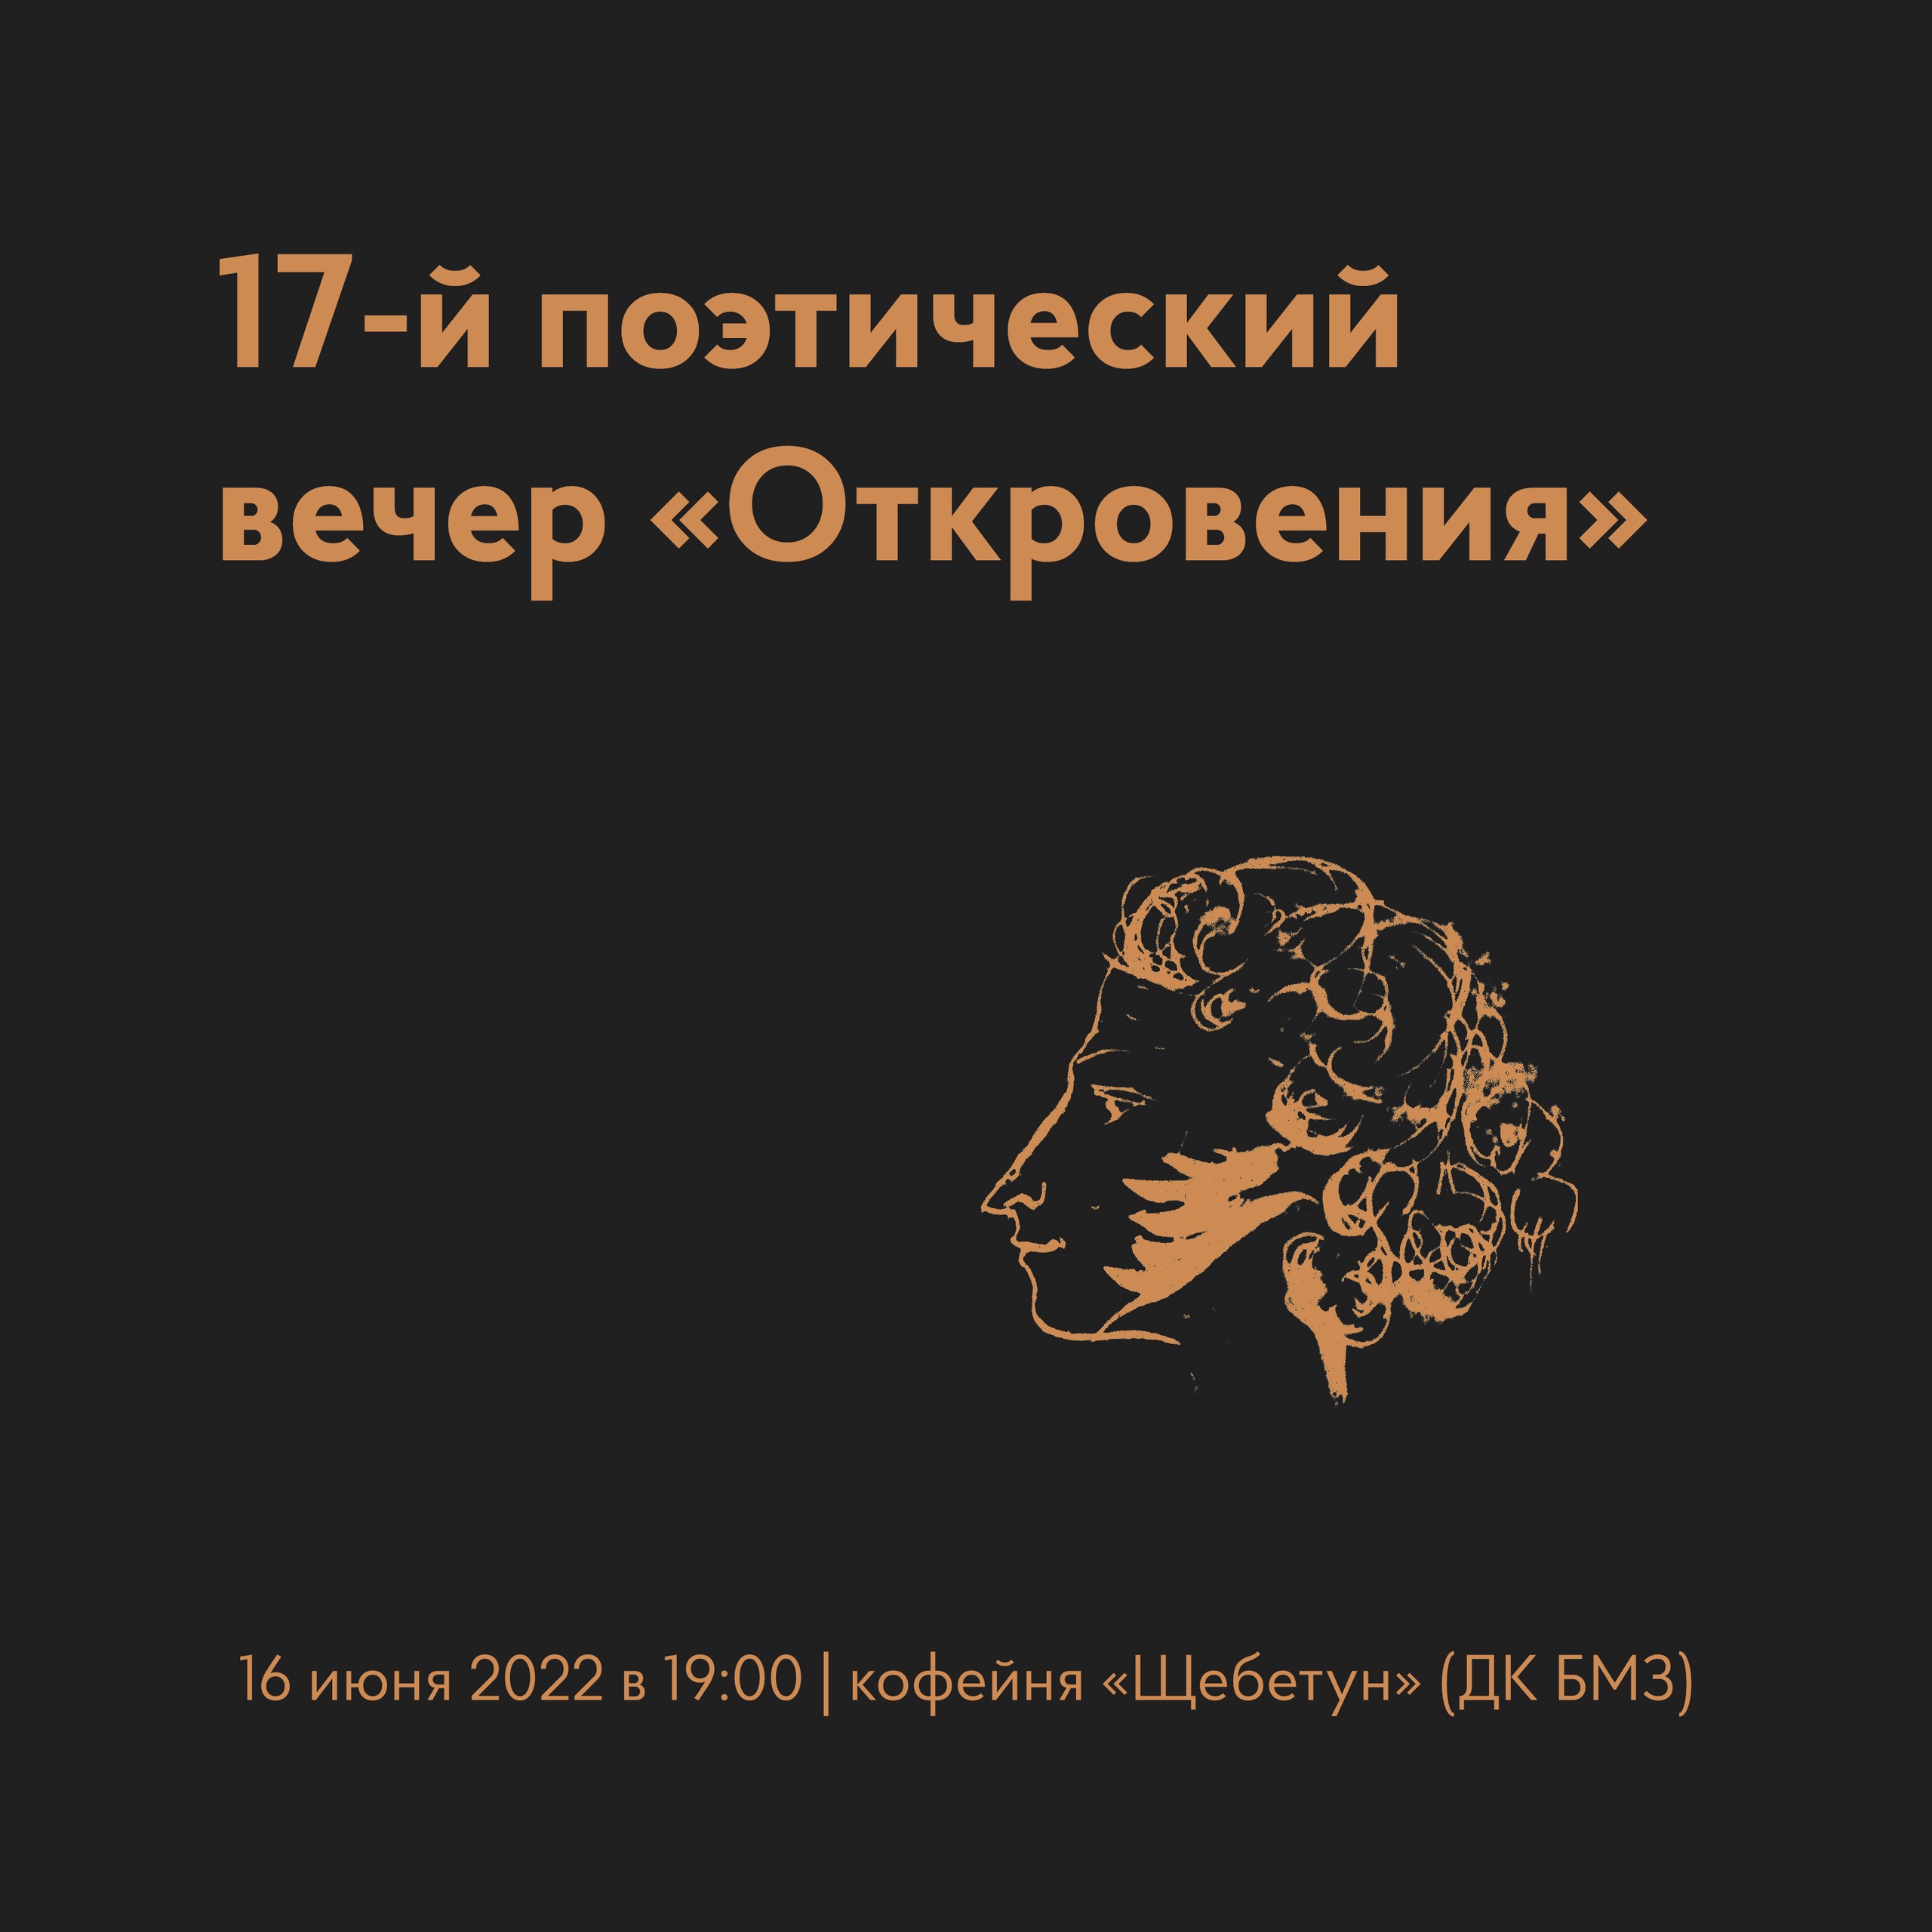 В Брянске пройдёт 17-ый поэтический вечер «Откровения»